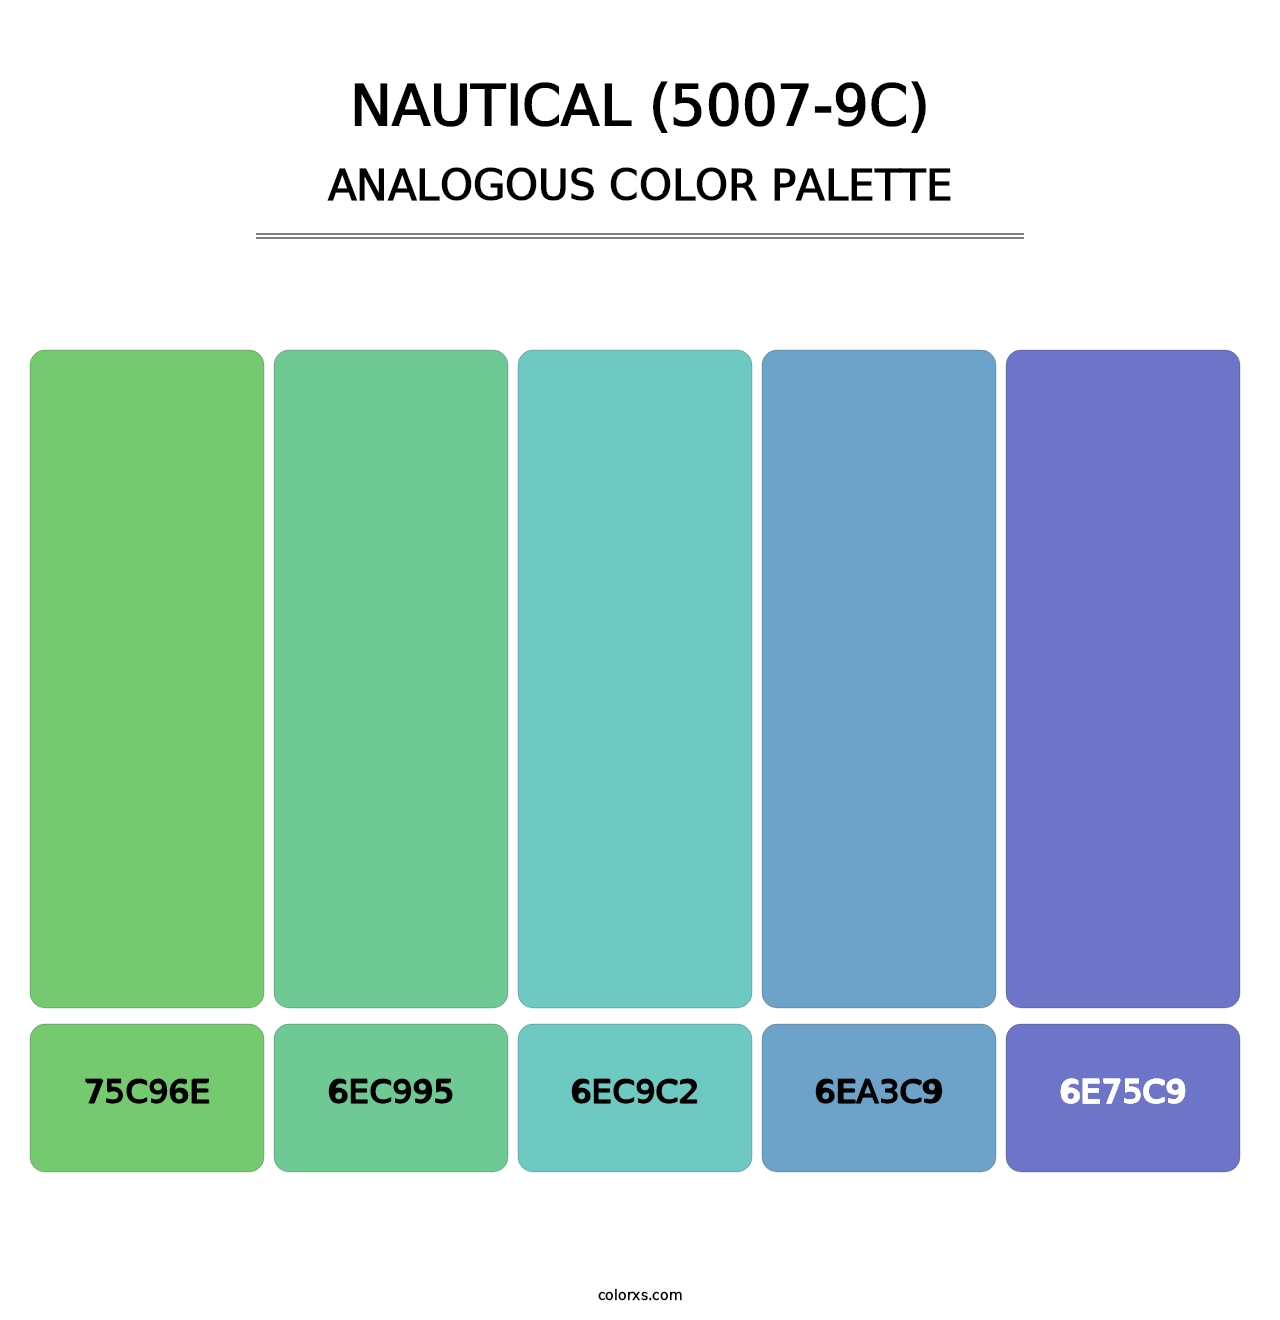 Nautical (5007-9C) - Analogous Color Palette